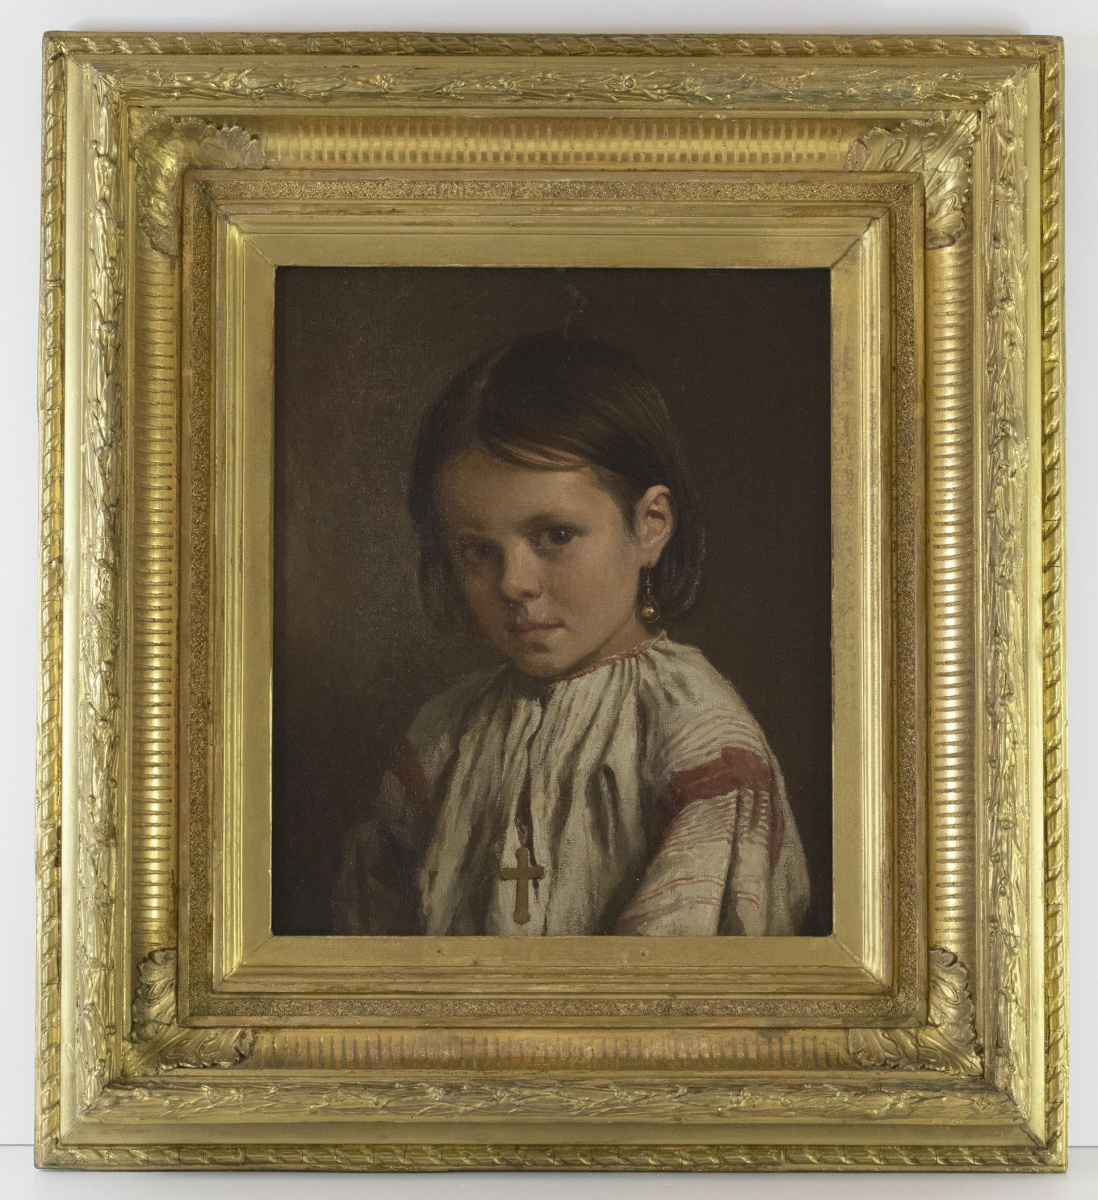  Брюллов П.А. Картина «Крестьянская девочка». 1874